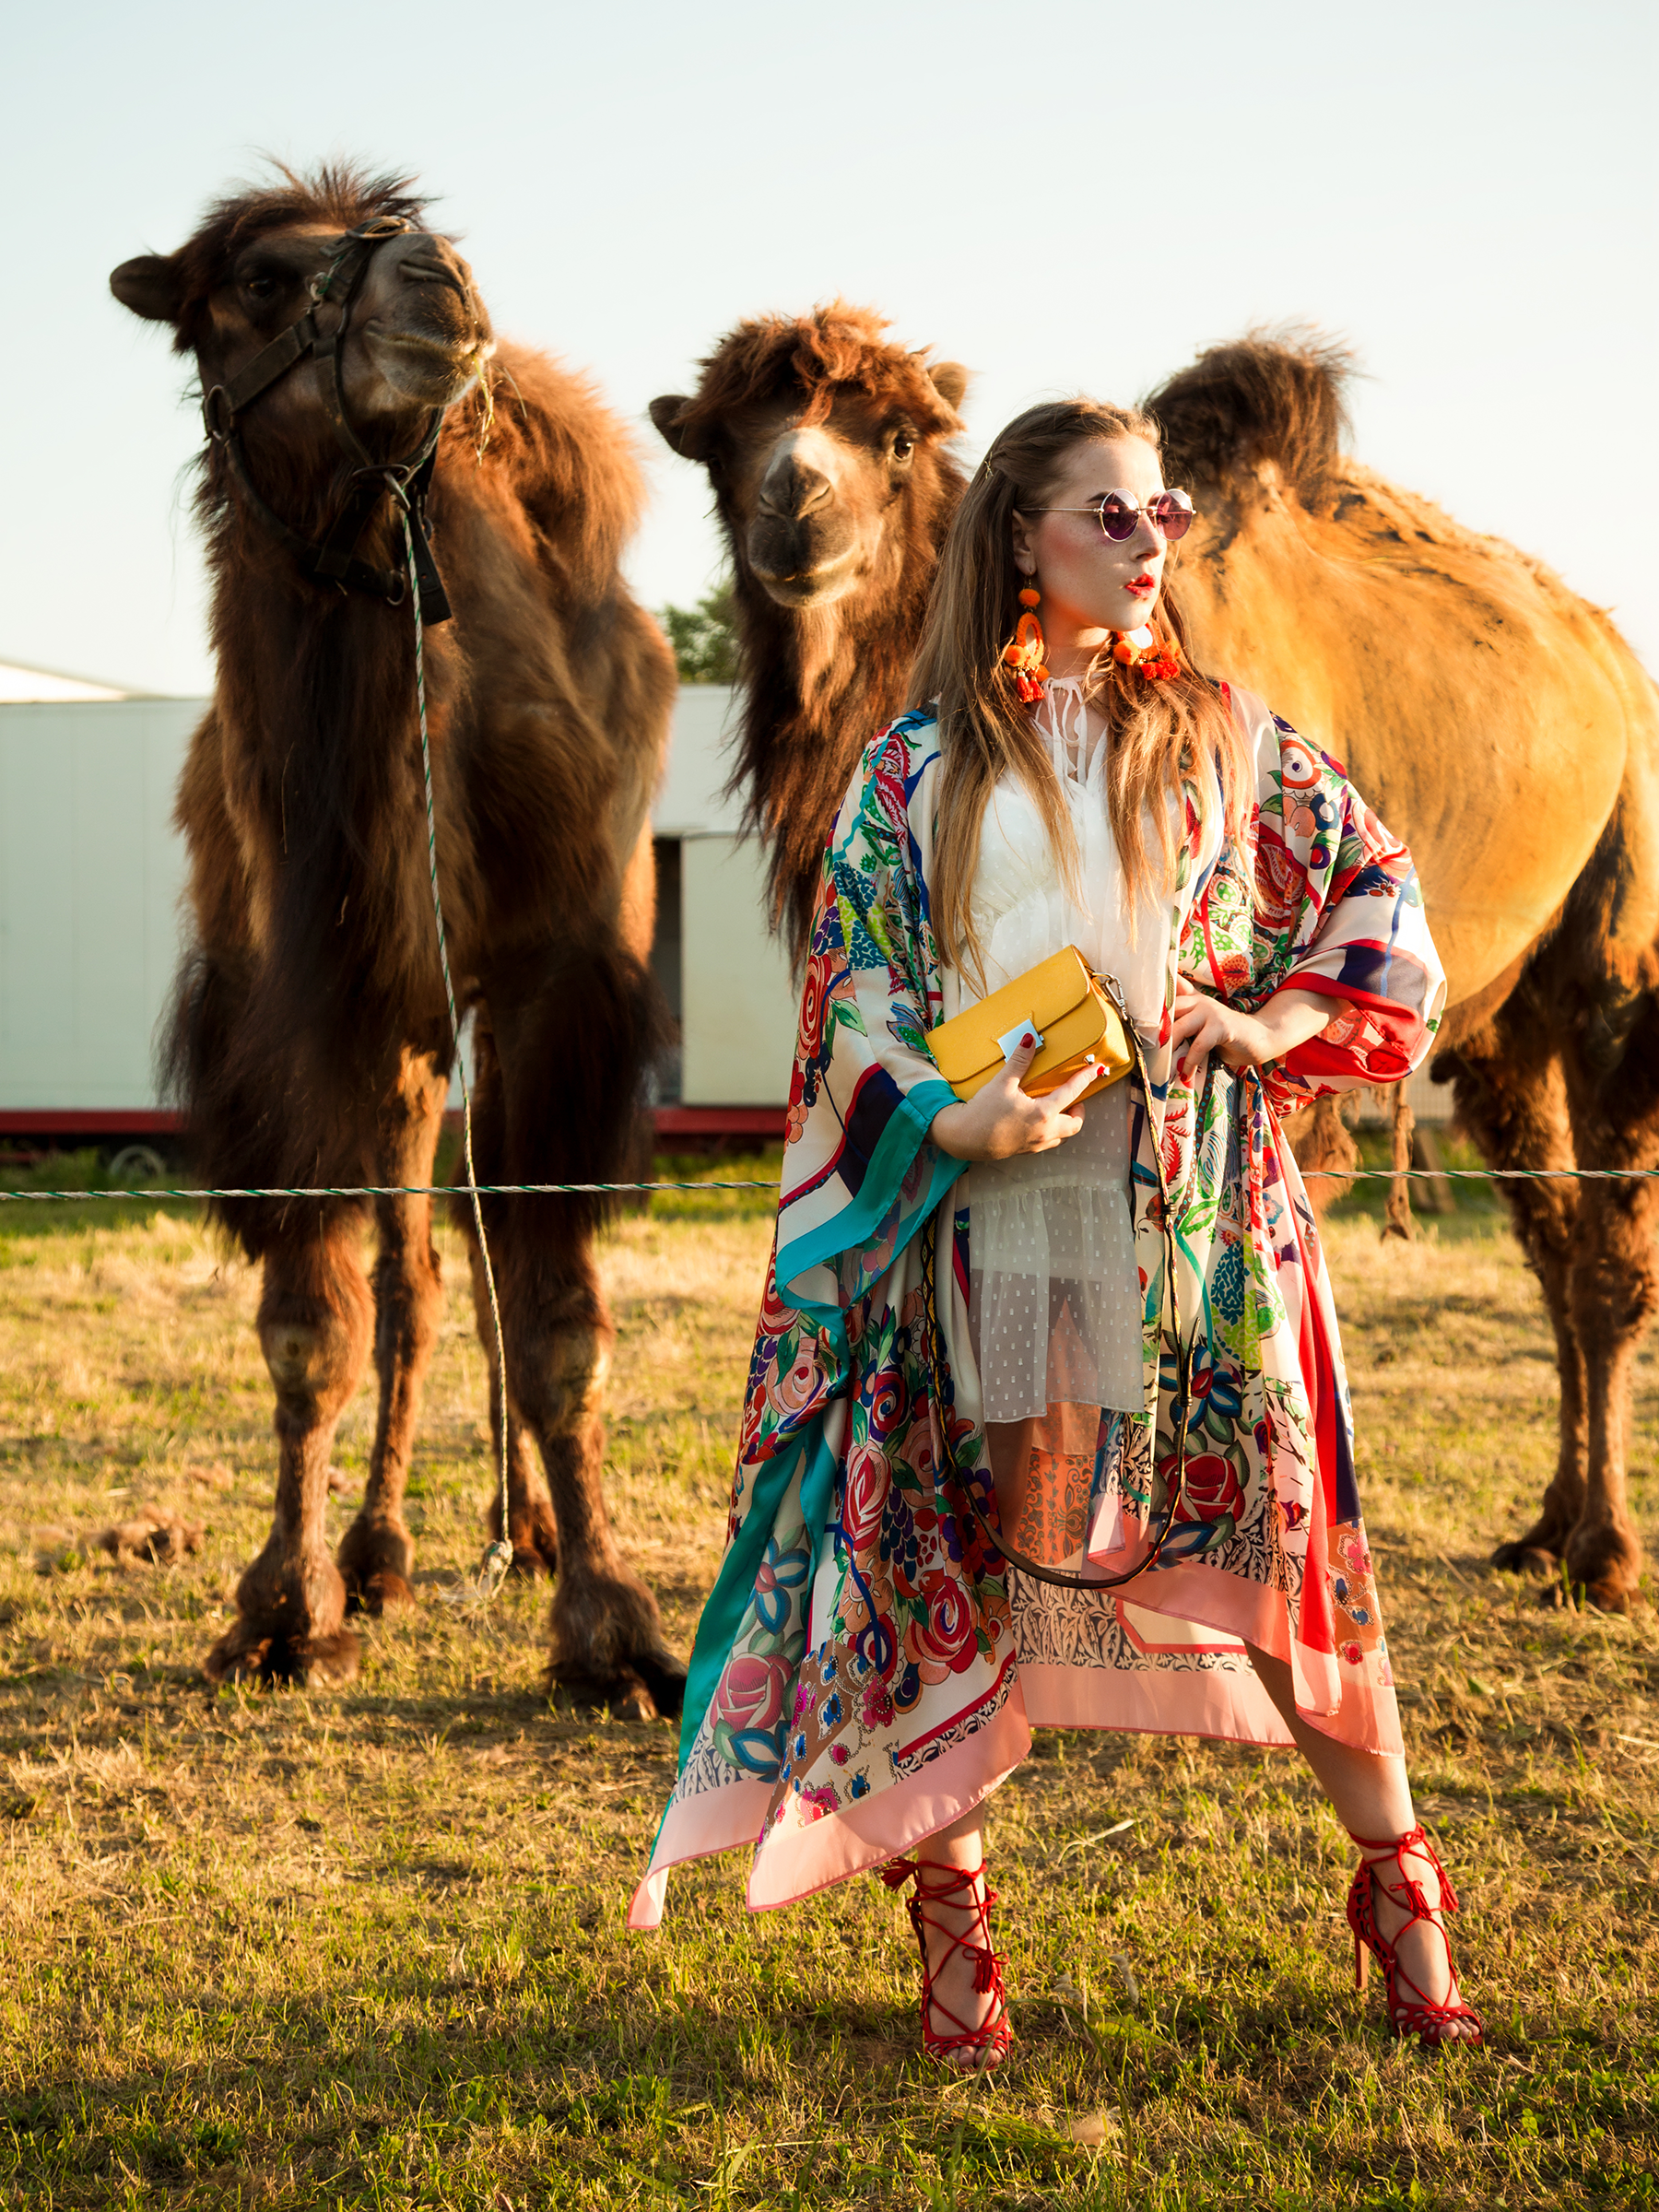 amely rose in einem summerlook oder festival outfit coachella im zara kimono mit kamelen tierfotografie